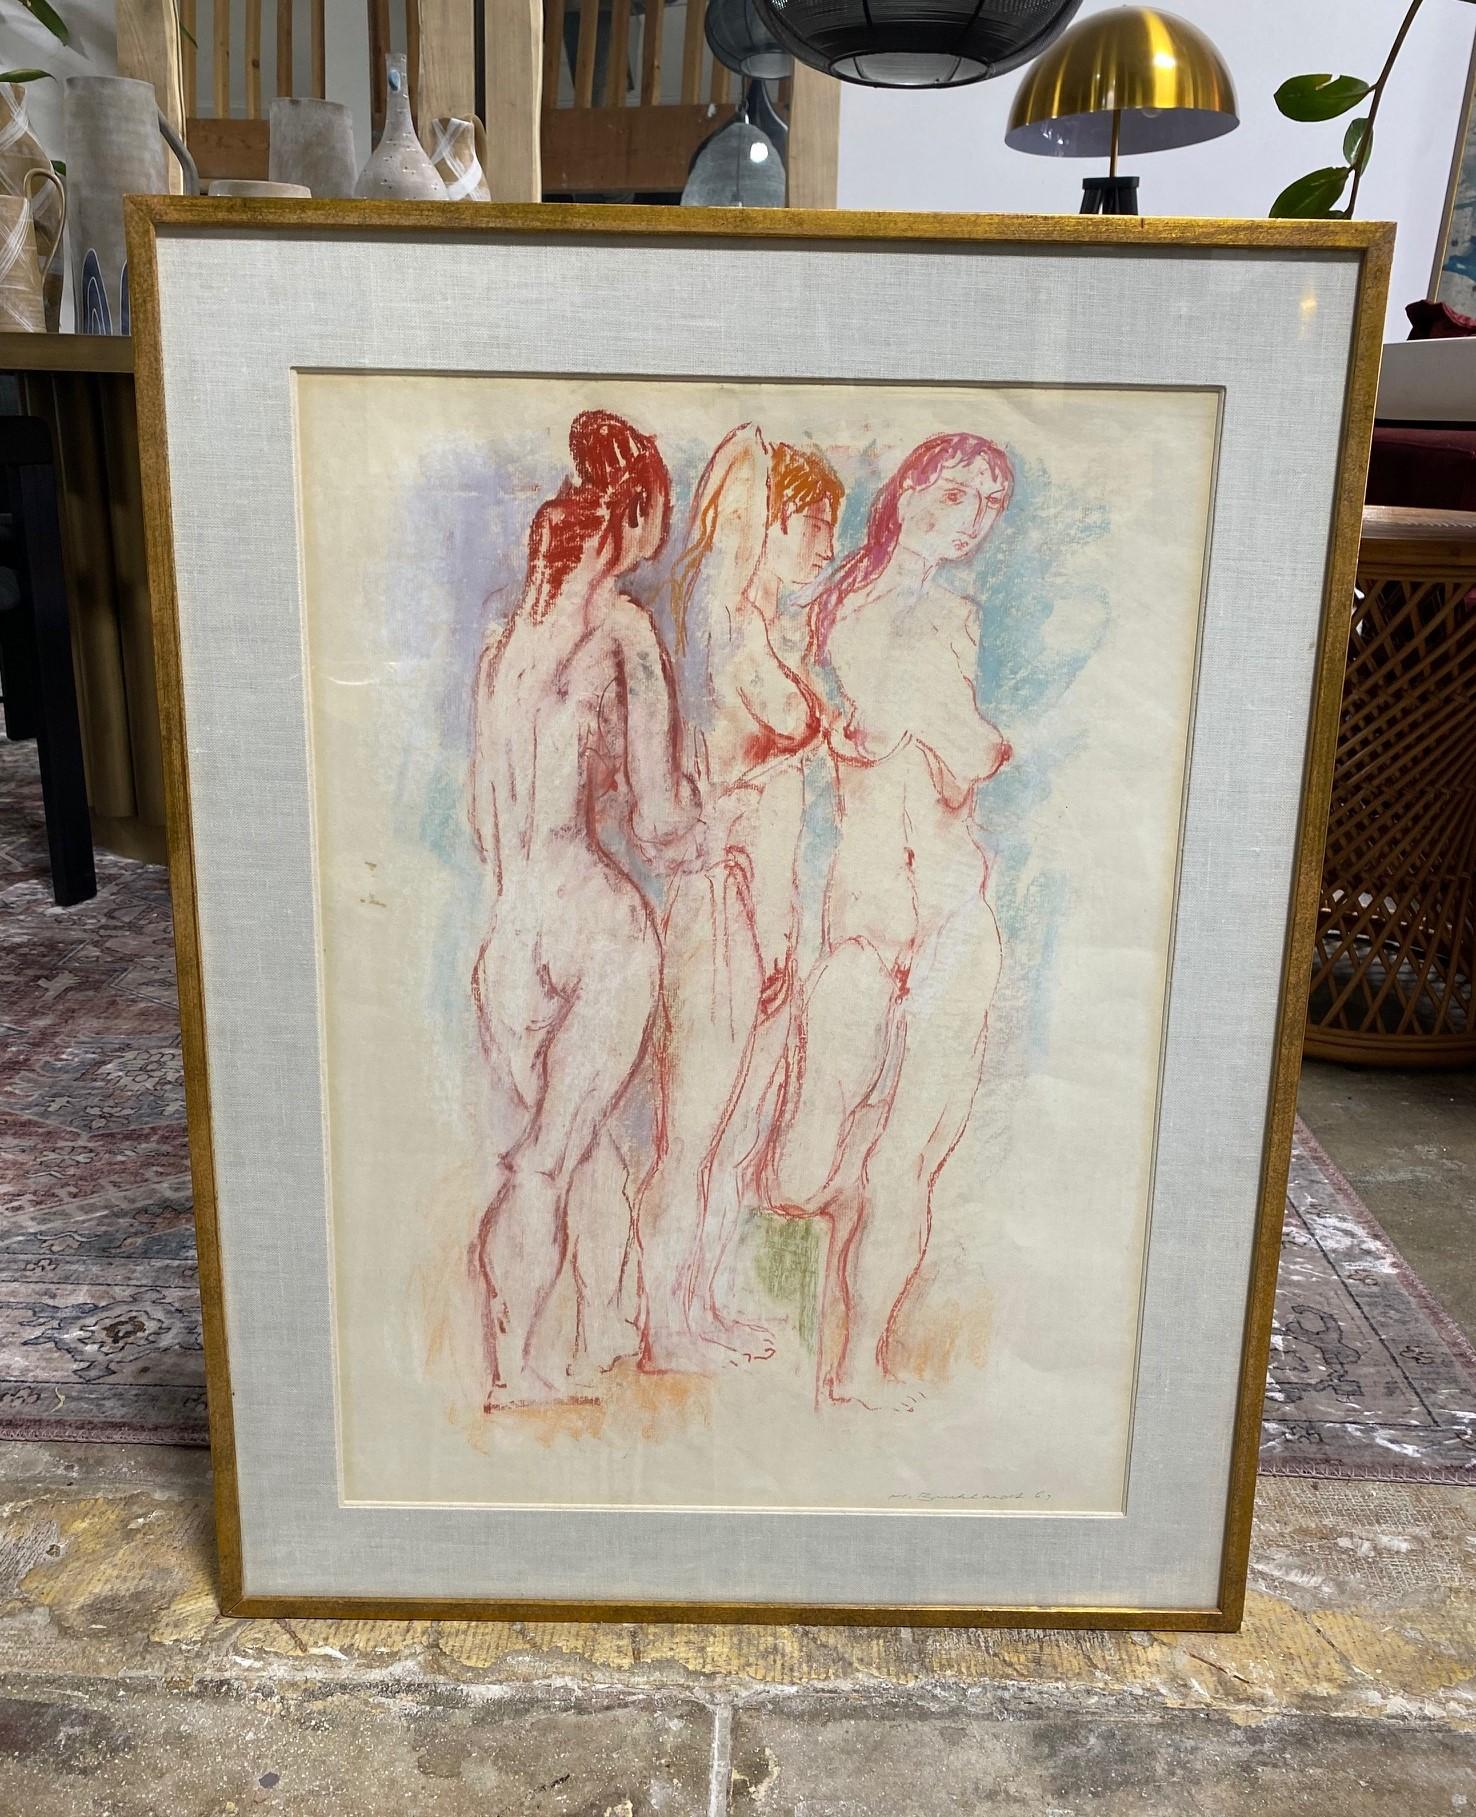 Une magnifique et très engageante grande peinture / dessin au pastel abstrait original de trois figures féminines nues par le peintre-artiste suisse / américain / californien Hans Burkhardt. 

Cette œuvre est signée au crayon à la main et datée